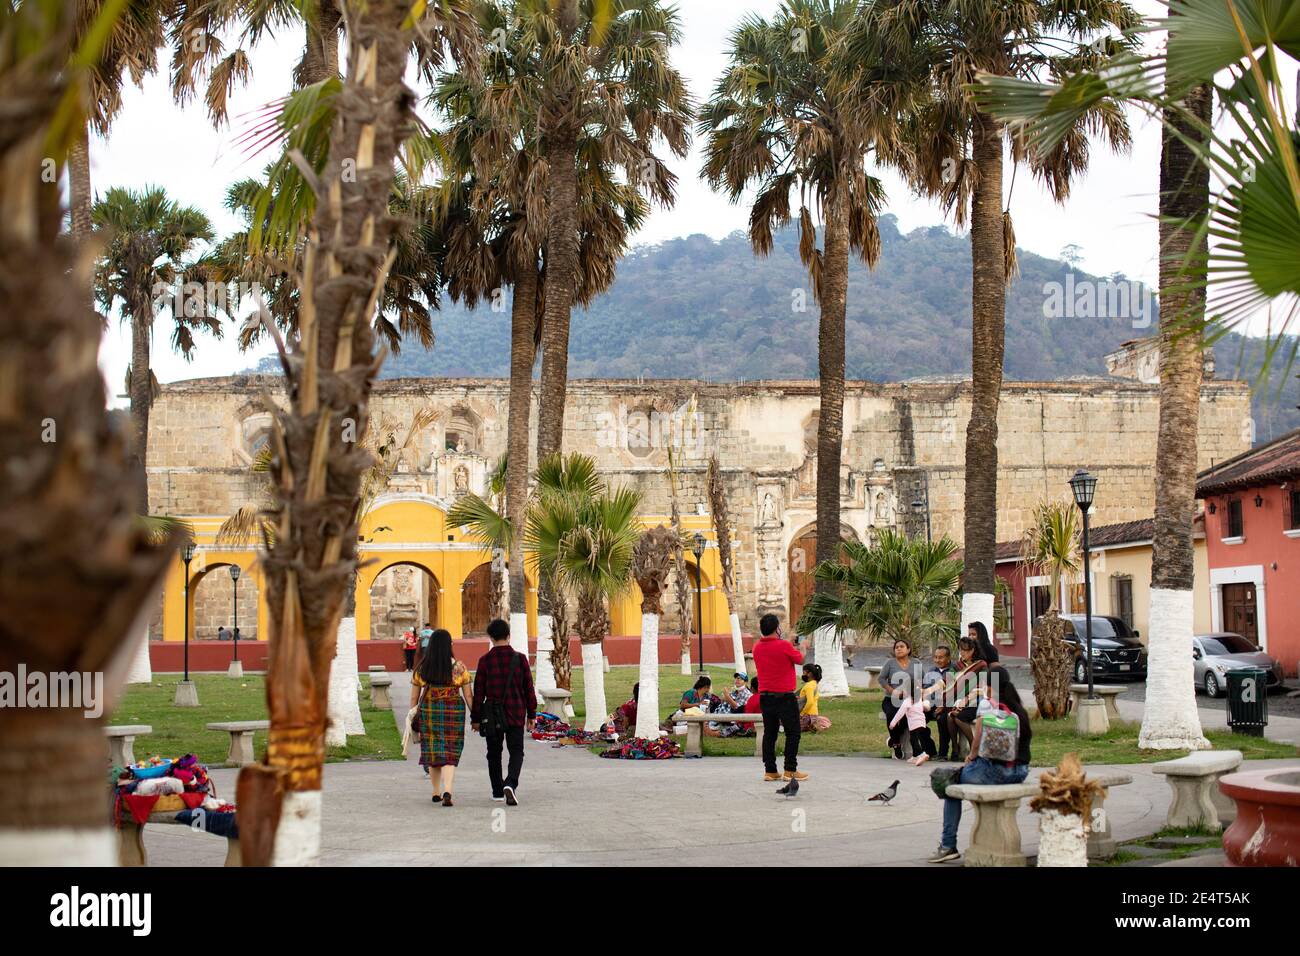 Les ruines d'un couvent espagnol d'oreille coloniale sont le fond d'un parc public à Antigua, Guatemala, Amérique centrale. Banque D'Images